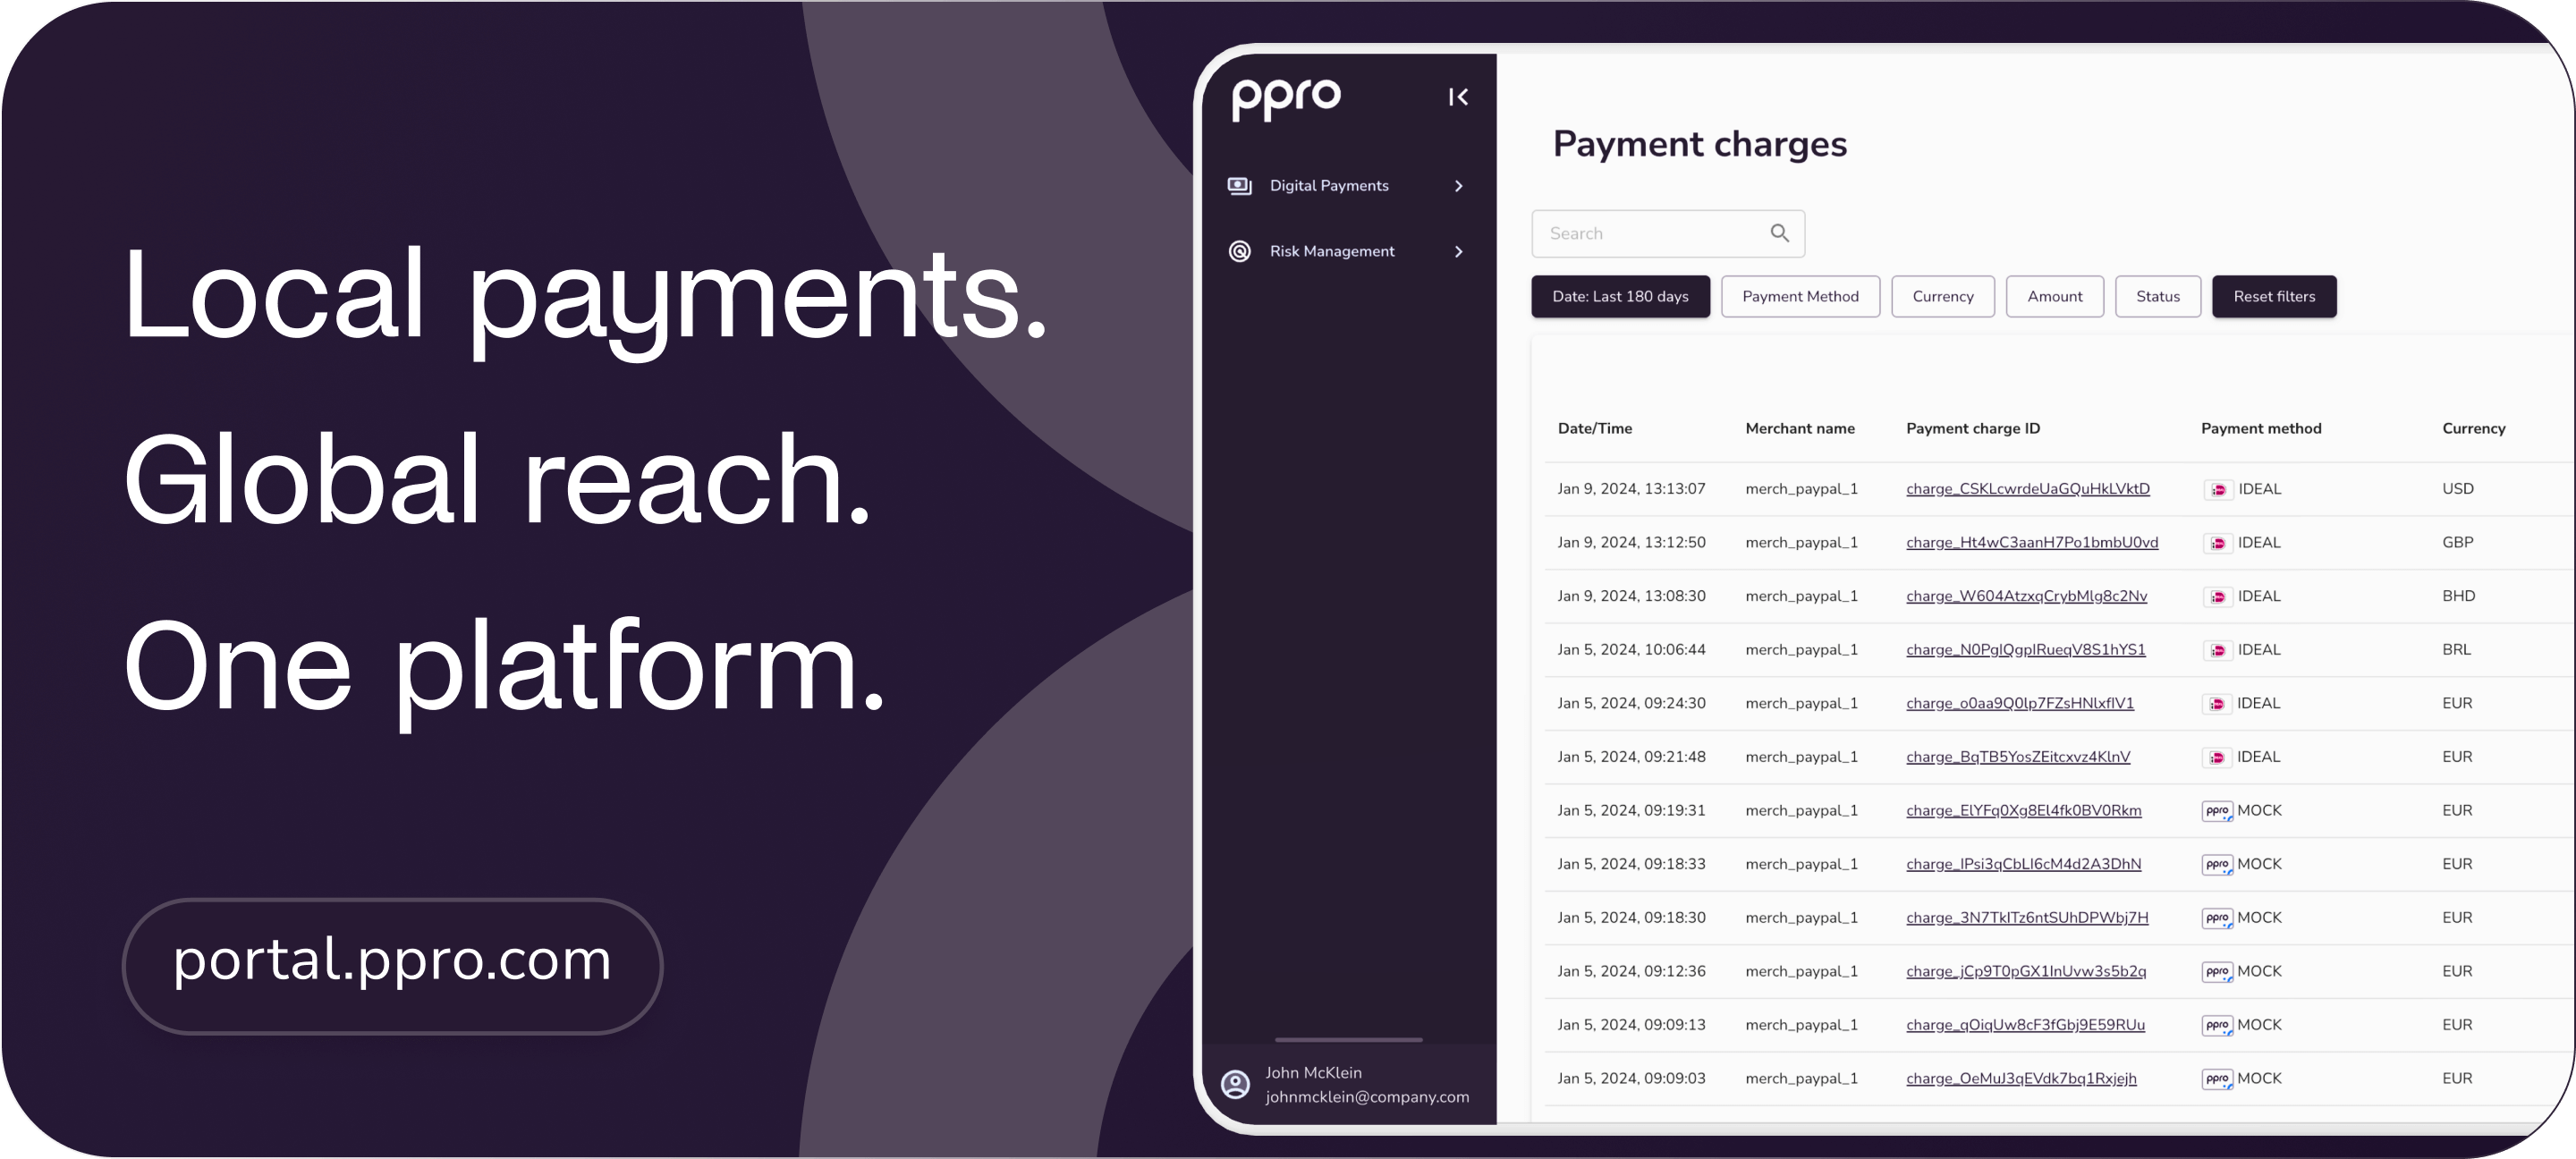 portal.ppro.com